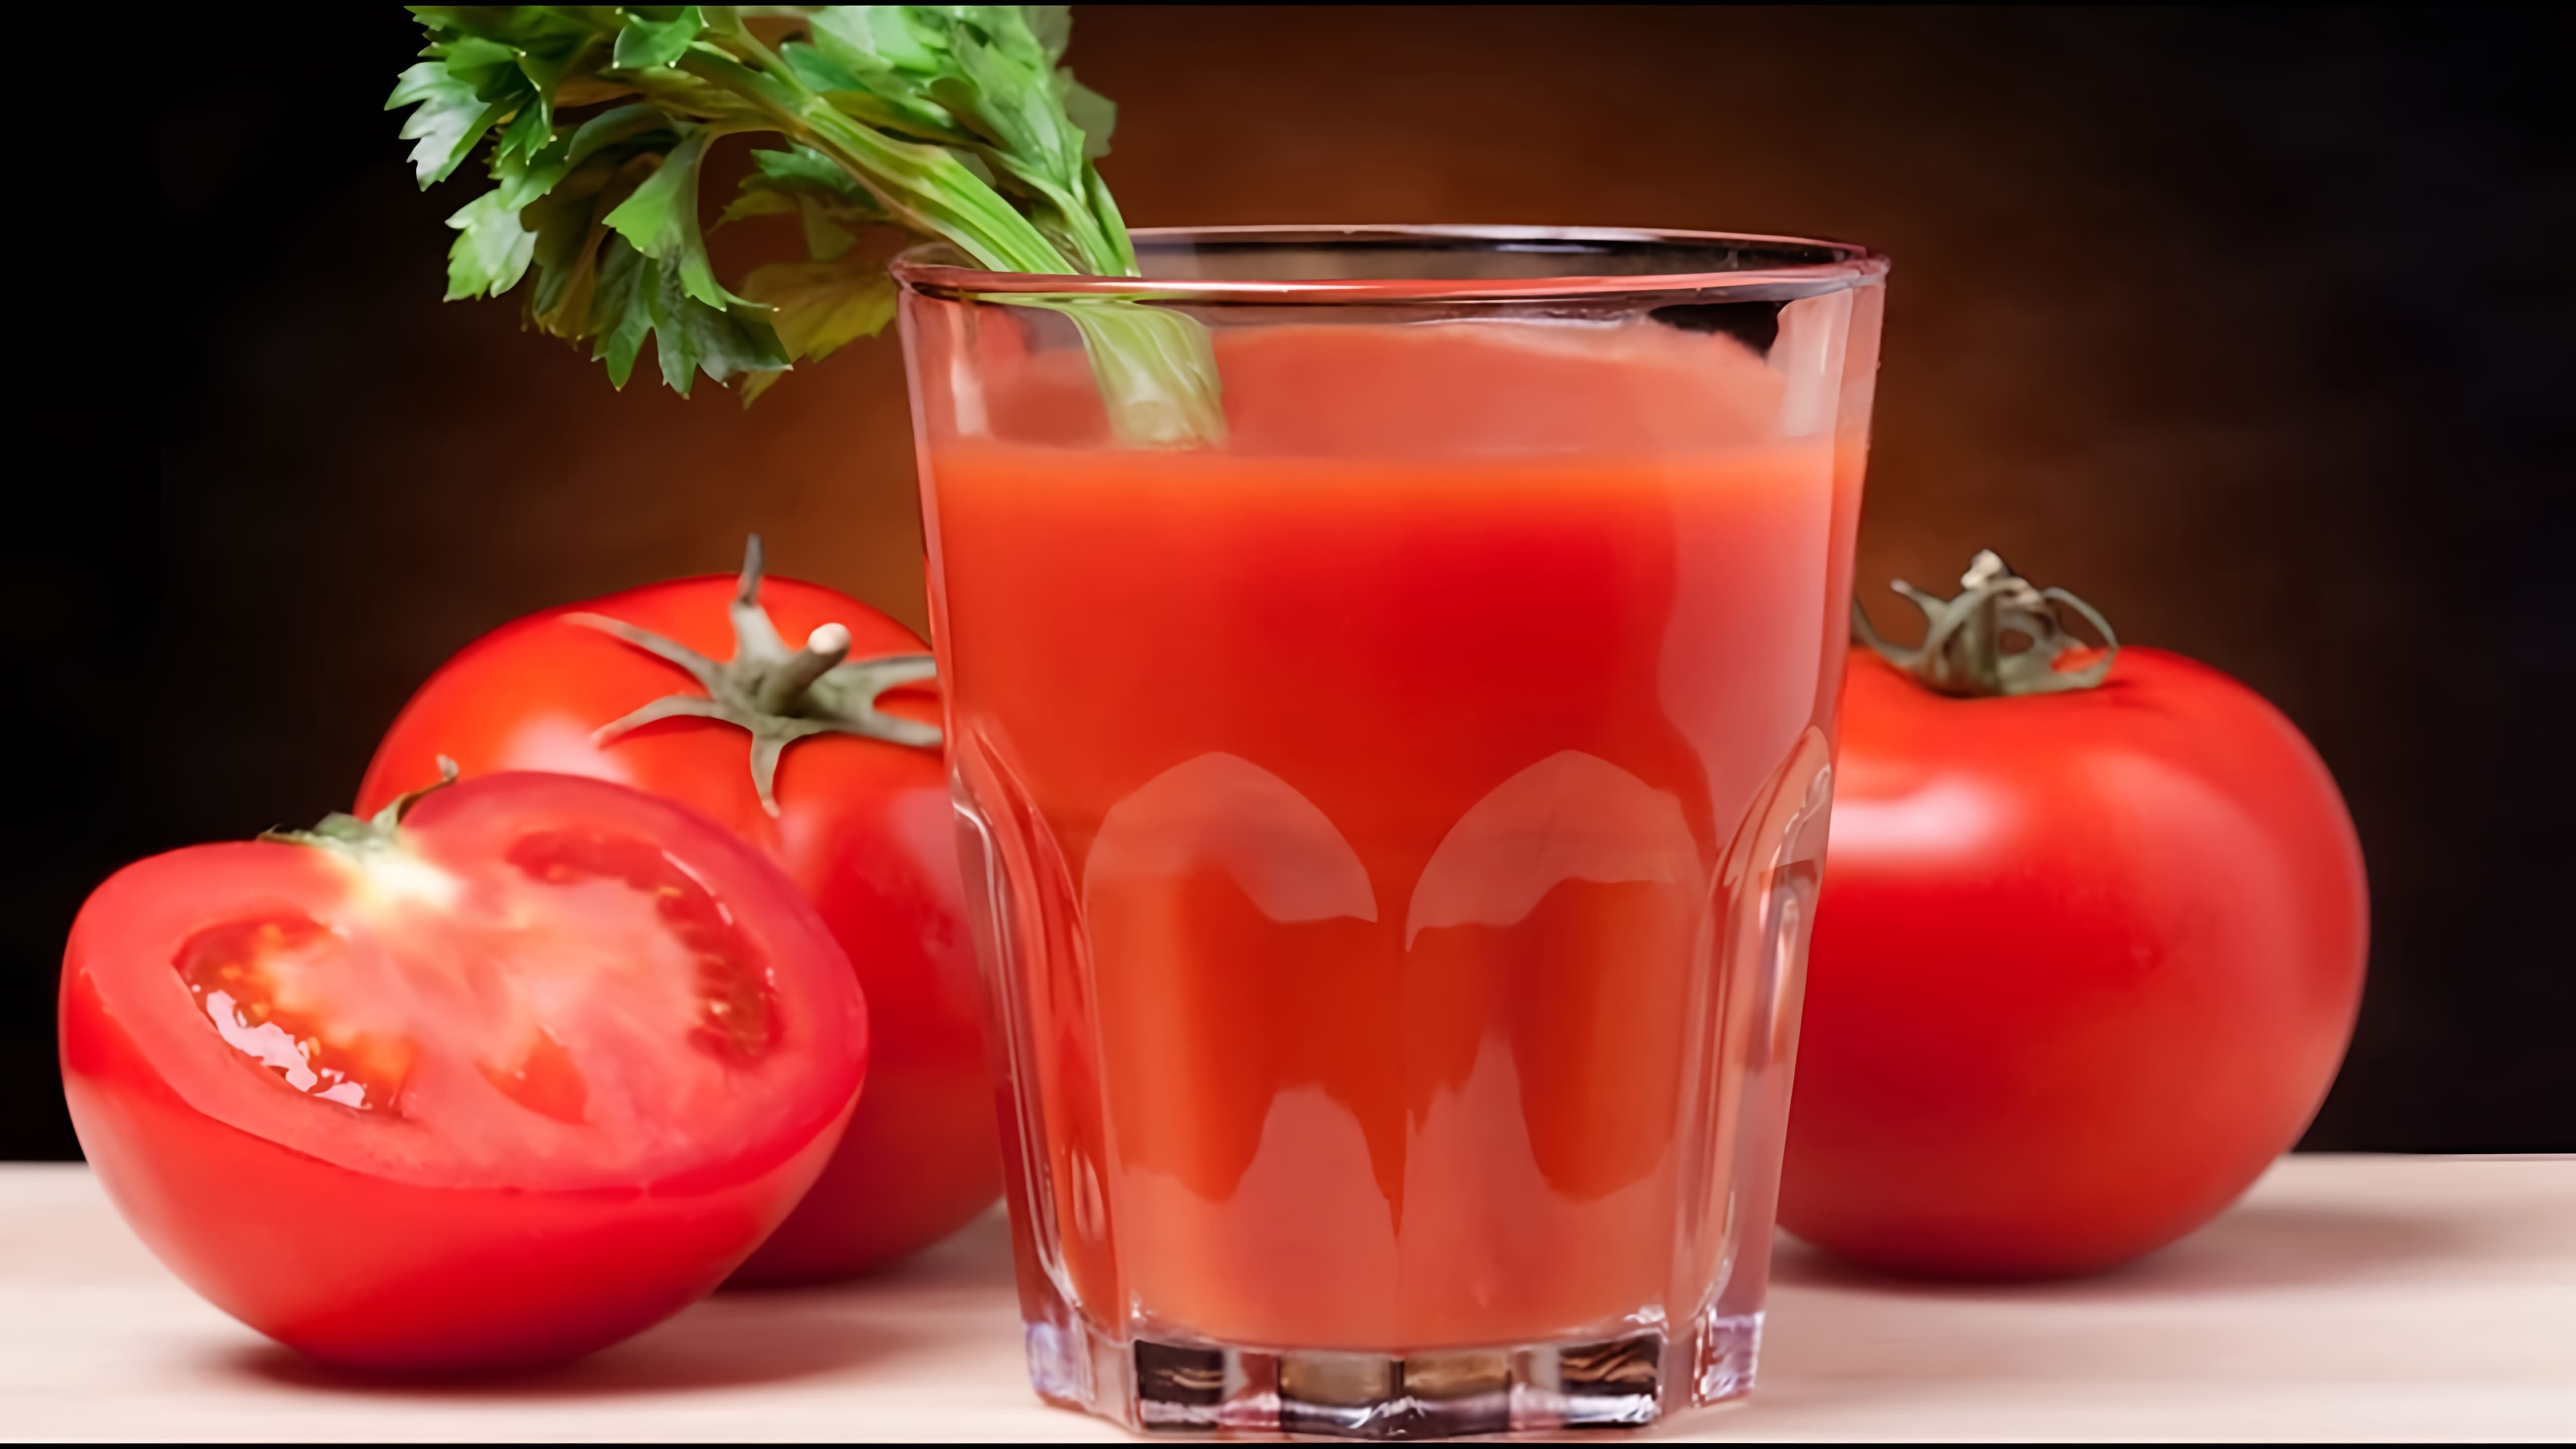 В данном видео демонстрируется процесс приготовления томатного сока в домашних условиях